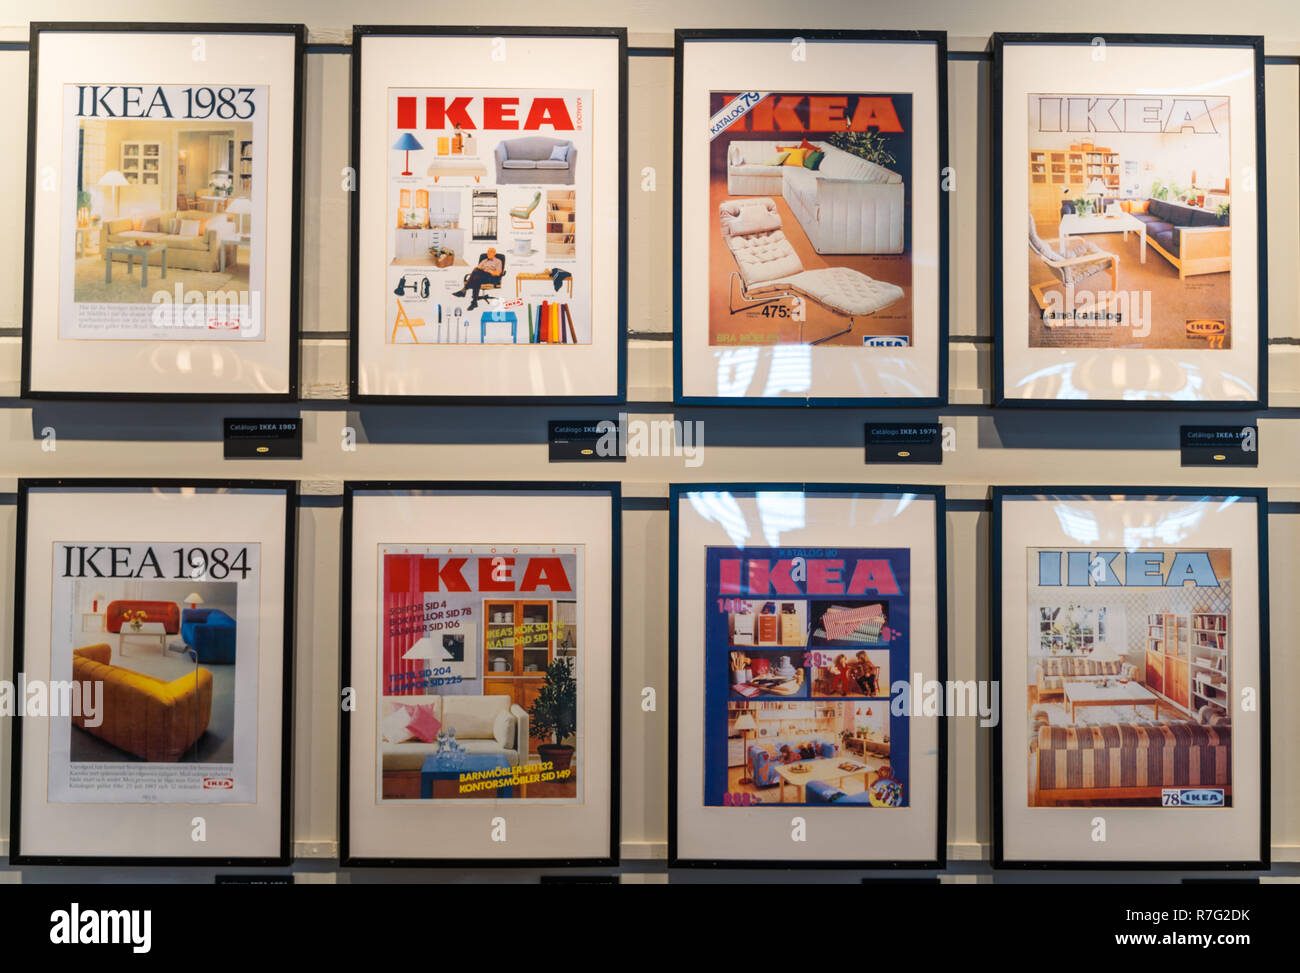 Valencia, Espagne - Décembre 09, 2018 : magasin Ikea lot en Alfafar, Valence. Exposition de l'ancien catalogues Ikea, encadrée sur le mur. Ikea Vintage gallery Banque D'Images